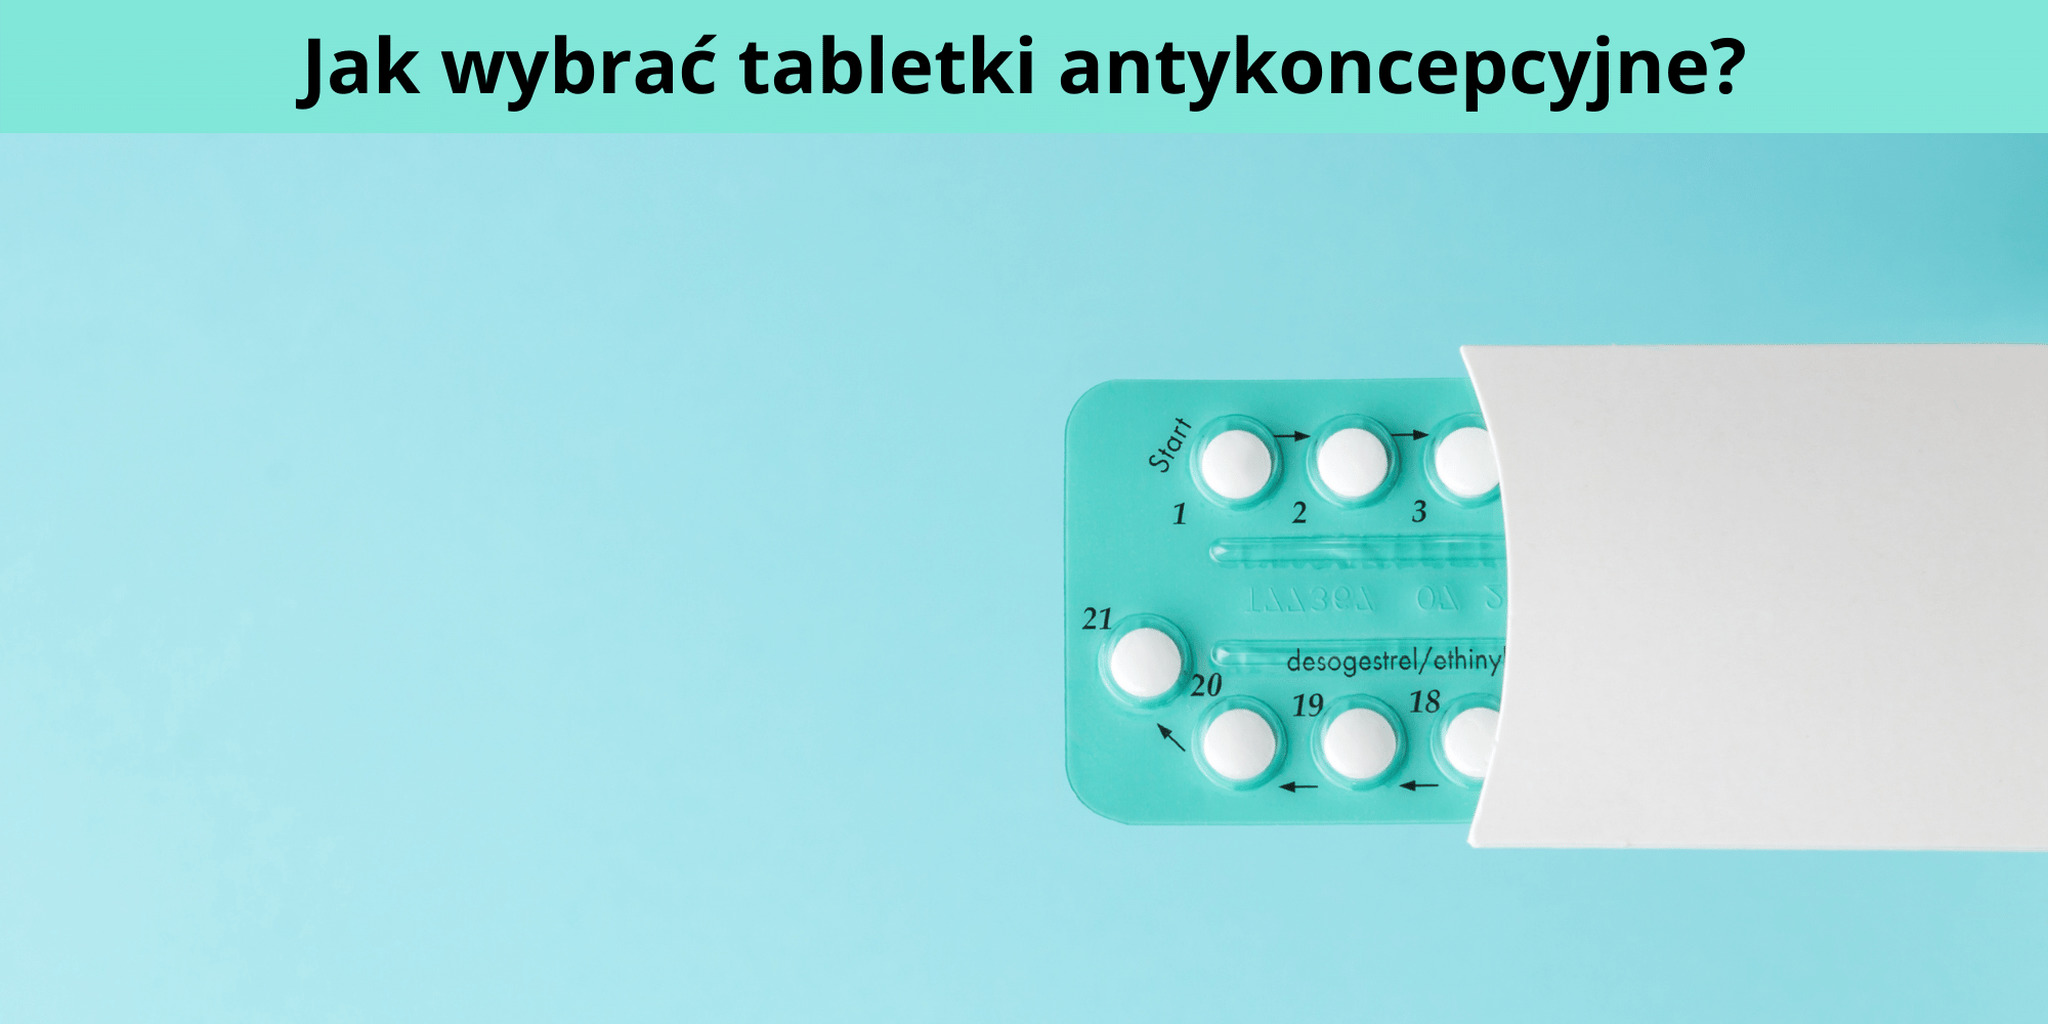 W jaki sposób dokonać wyboru tabletek antykoncepcyjnych?